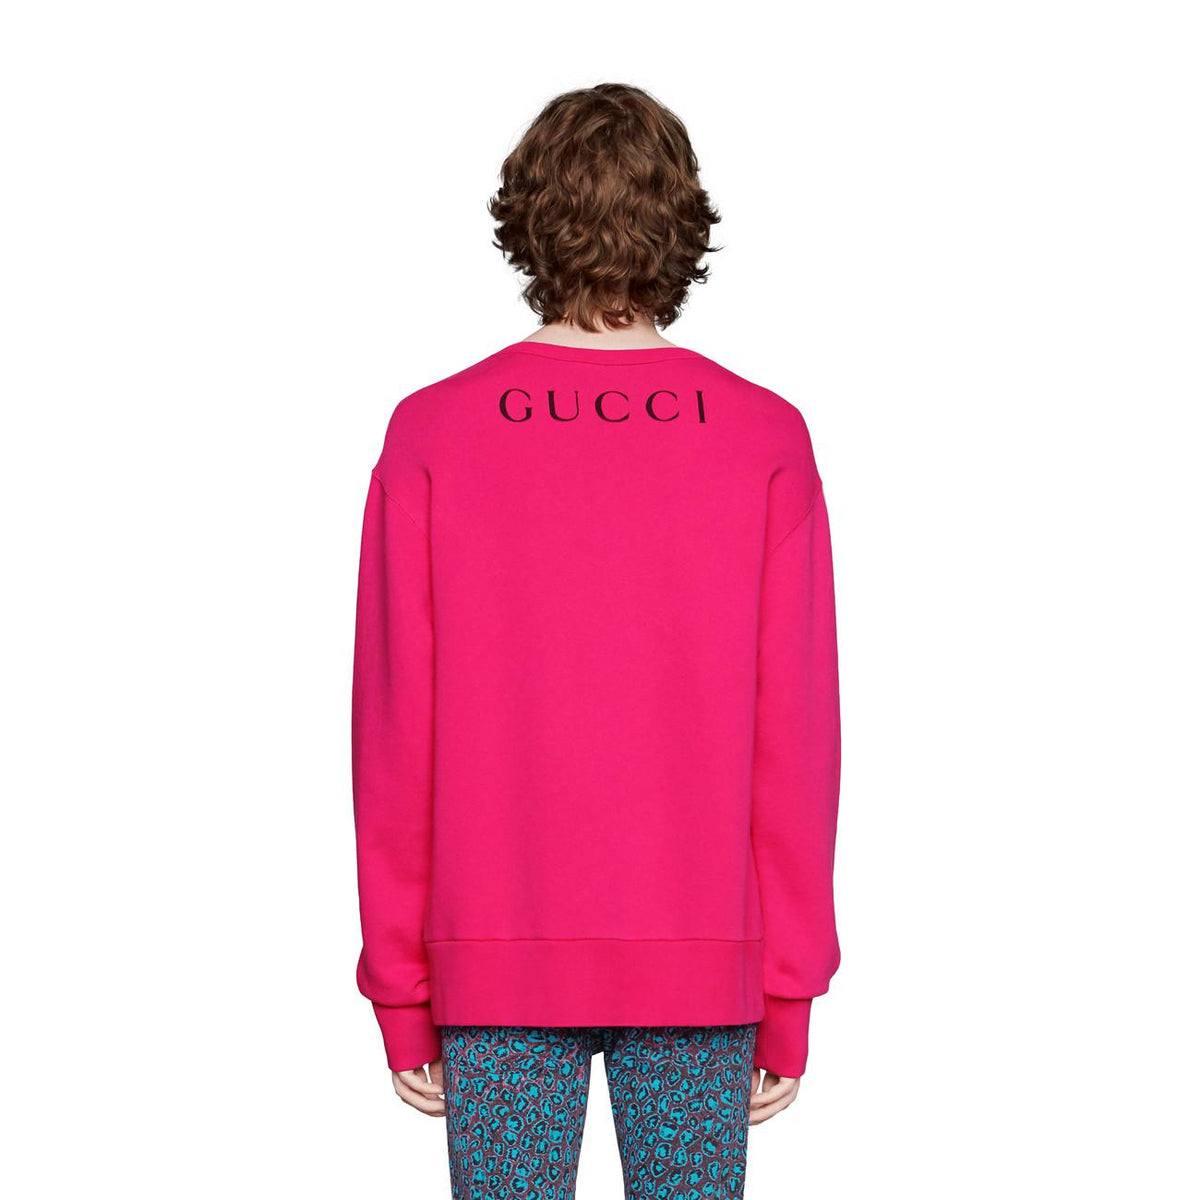 Gucci Billy Idol Crewneck Sweatshirt in Pink – Gavriel.us